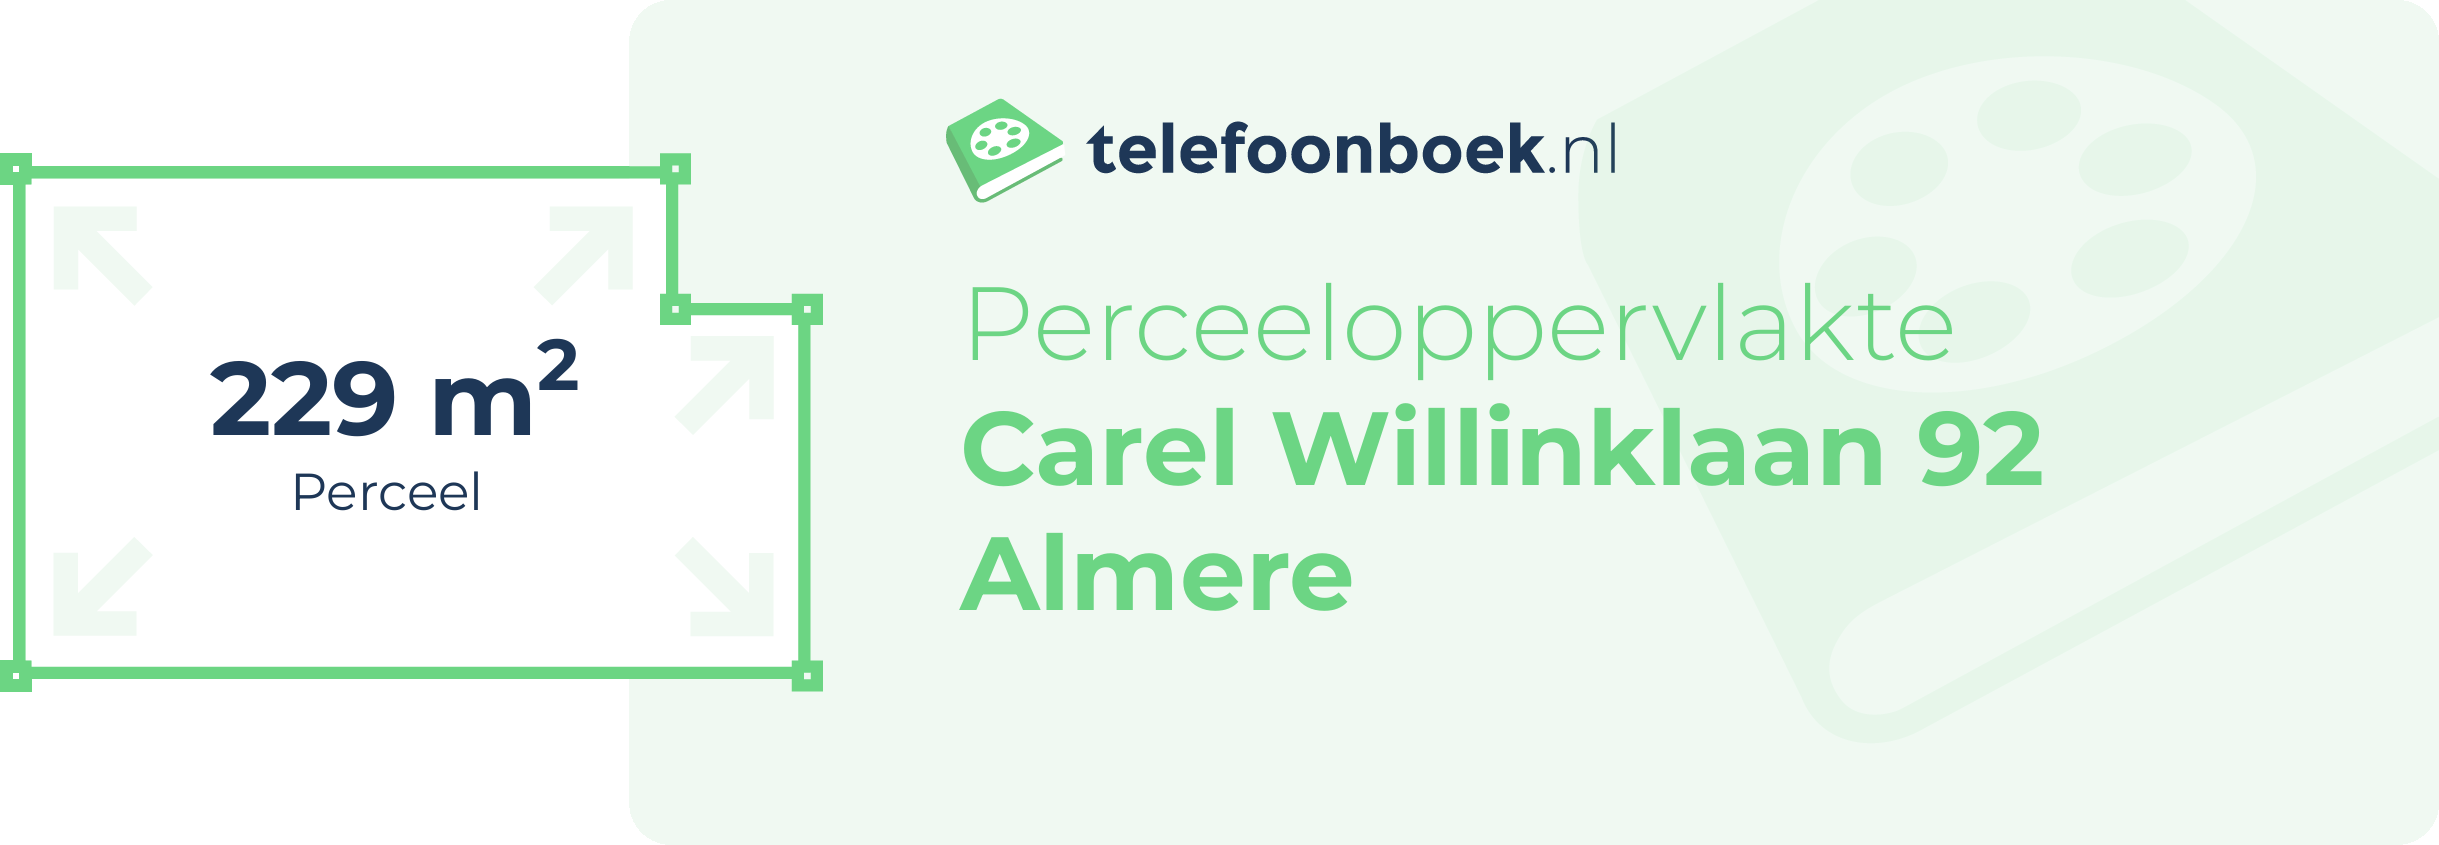 Perceeloppervlakte Carel Willinklaan 92 Almere